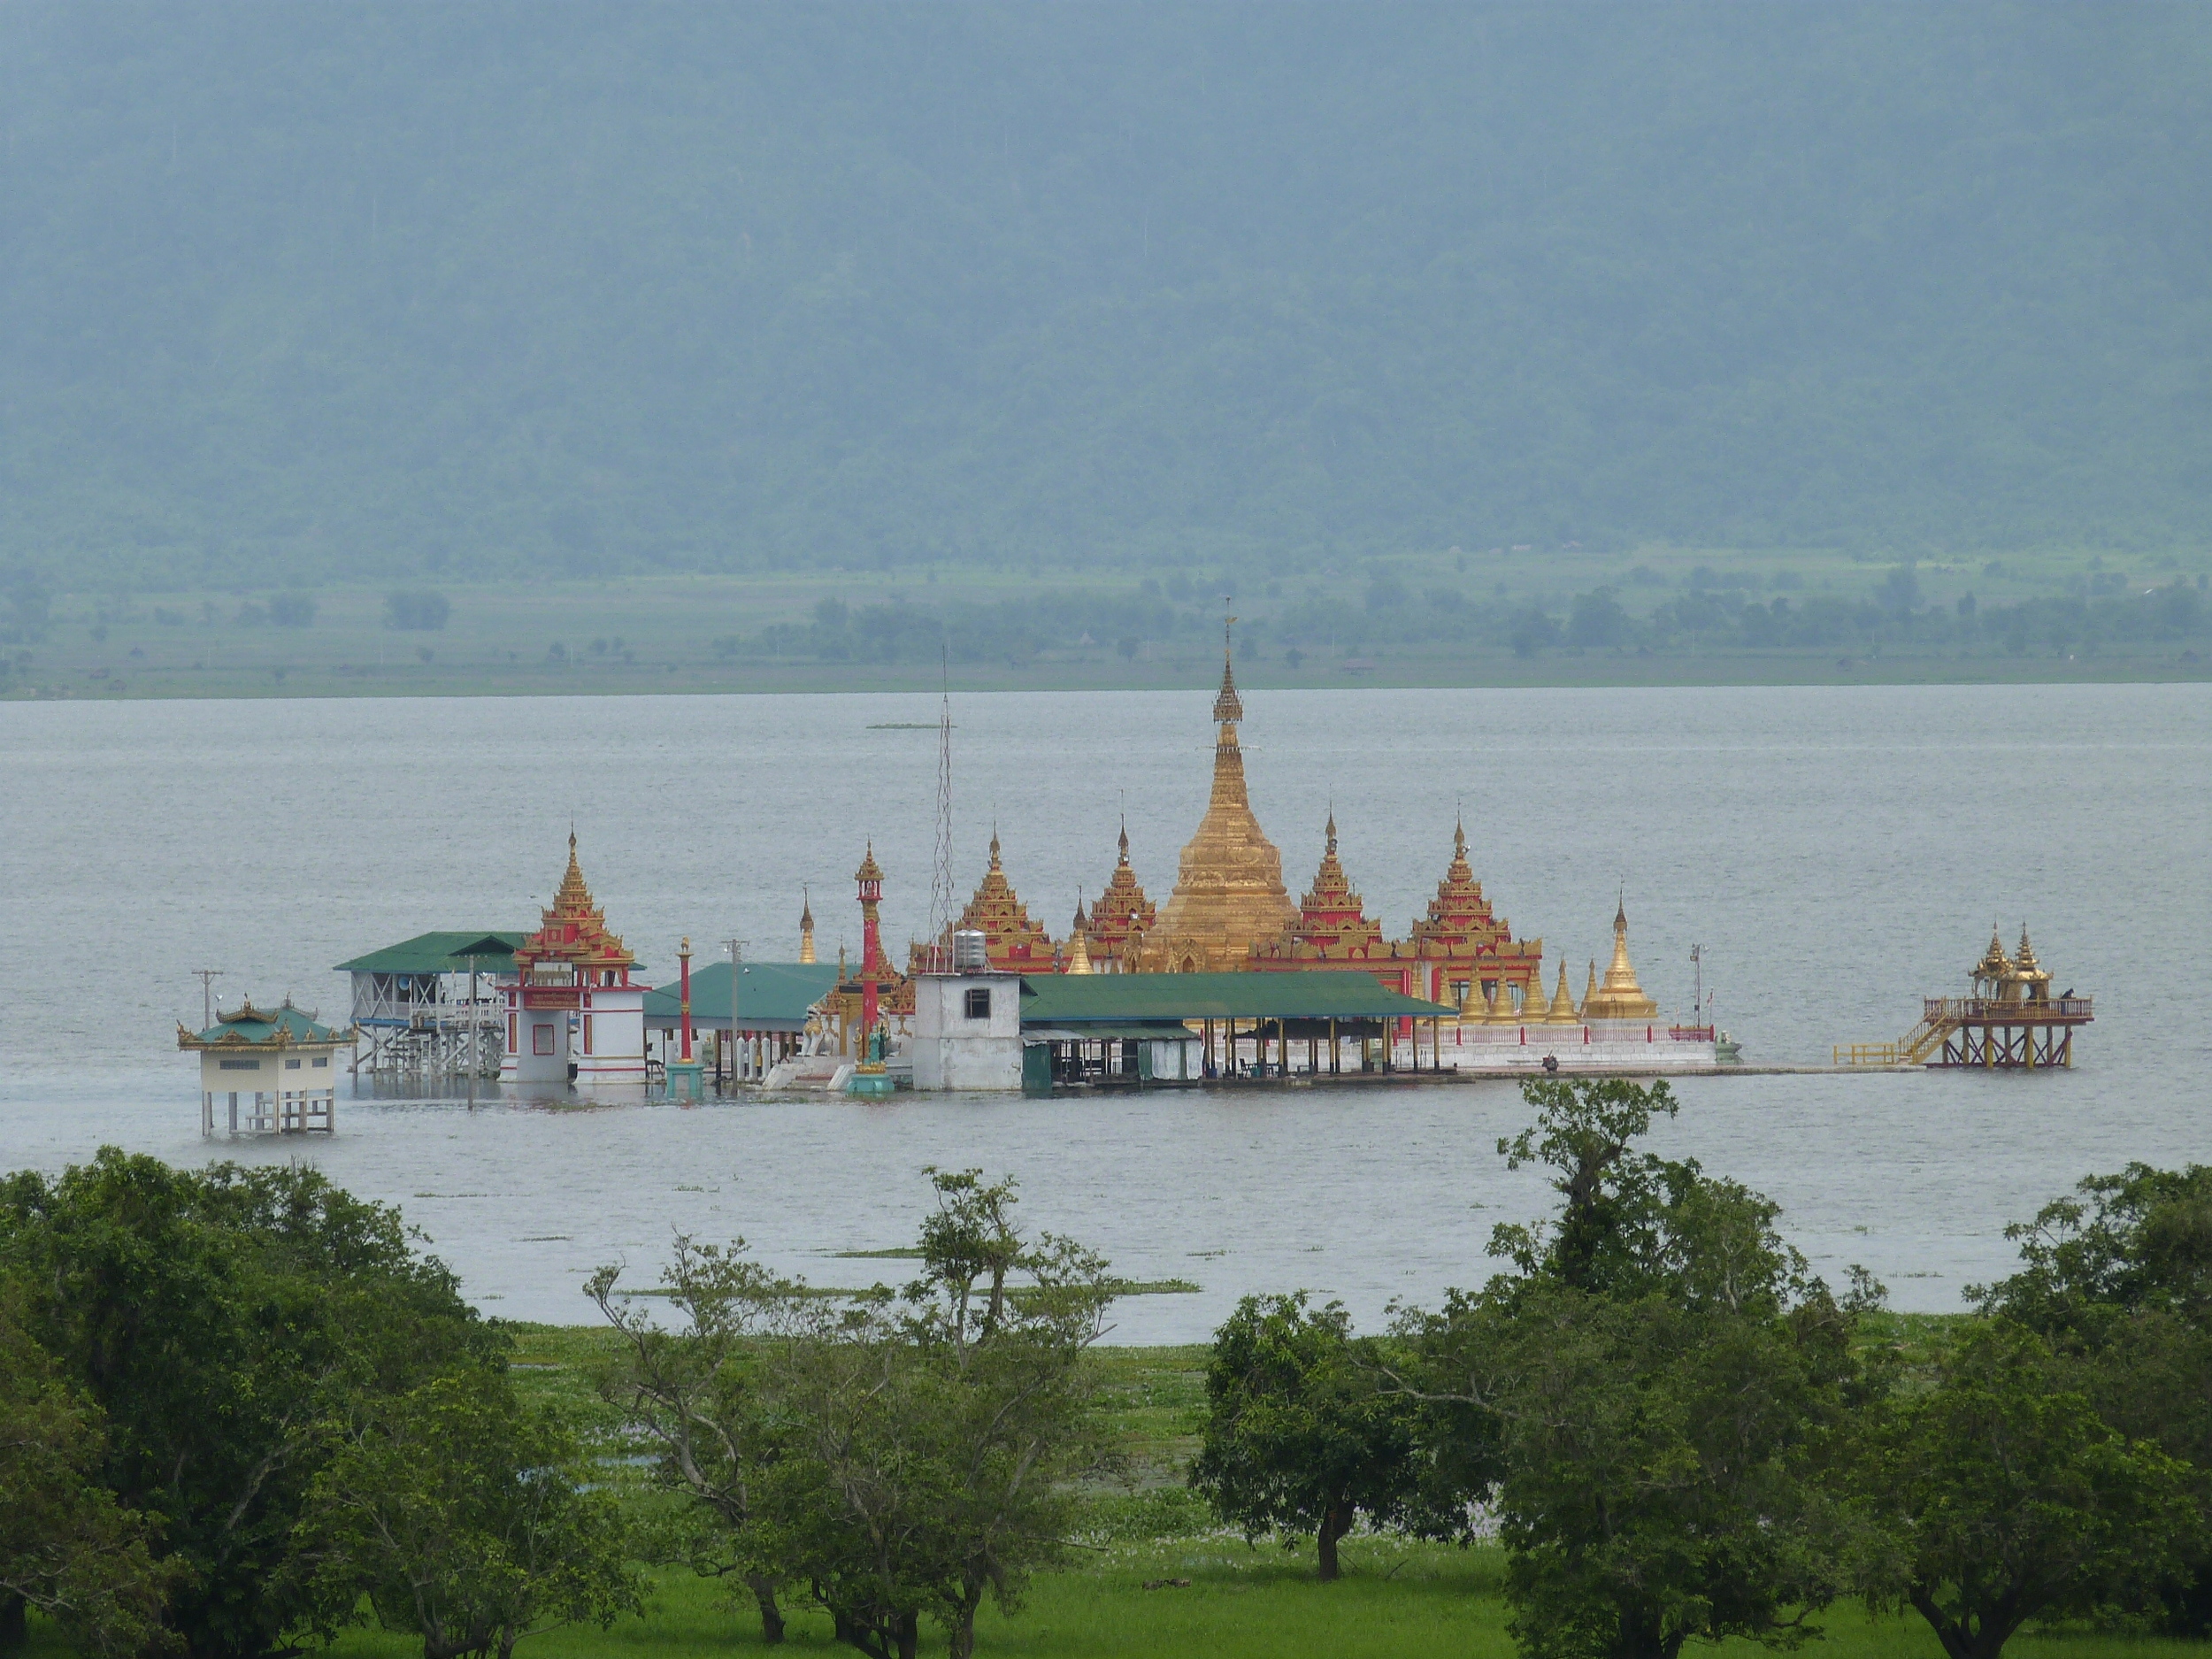  The Shwe Myitzu Pagoda at Indawgyi Lake&nbsp;*Photo courtesy of Sarah Frenz 